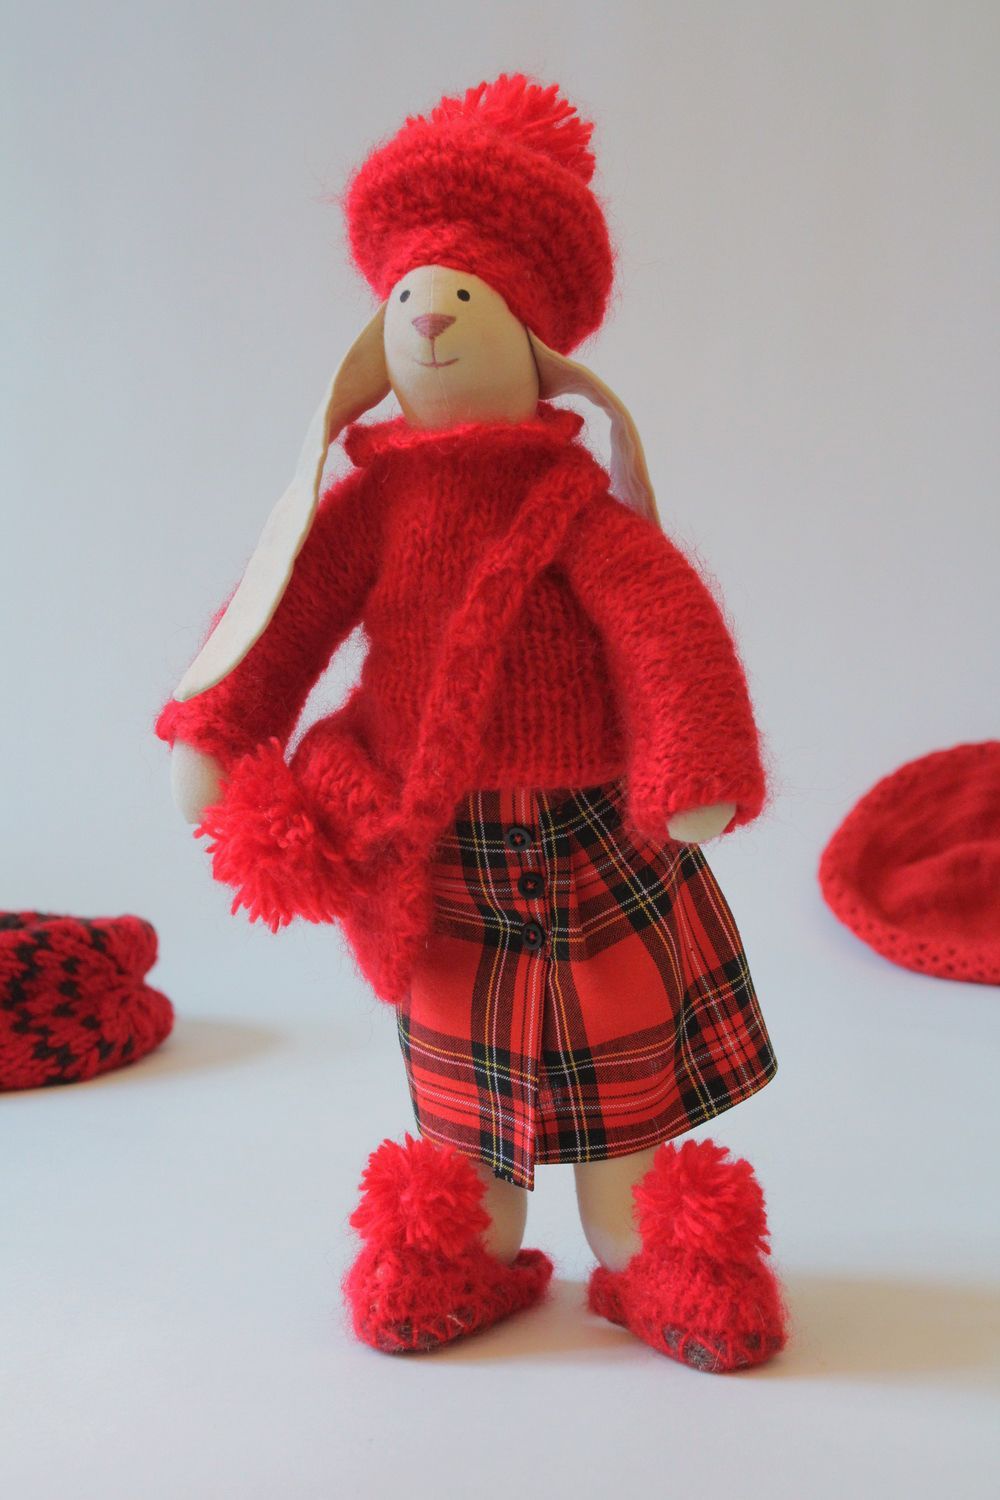 Textil Hase in schottischer Kleidung foto 5